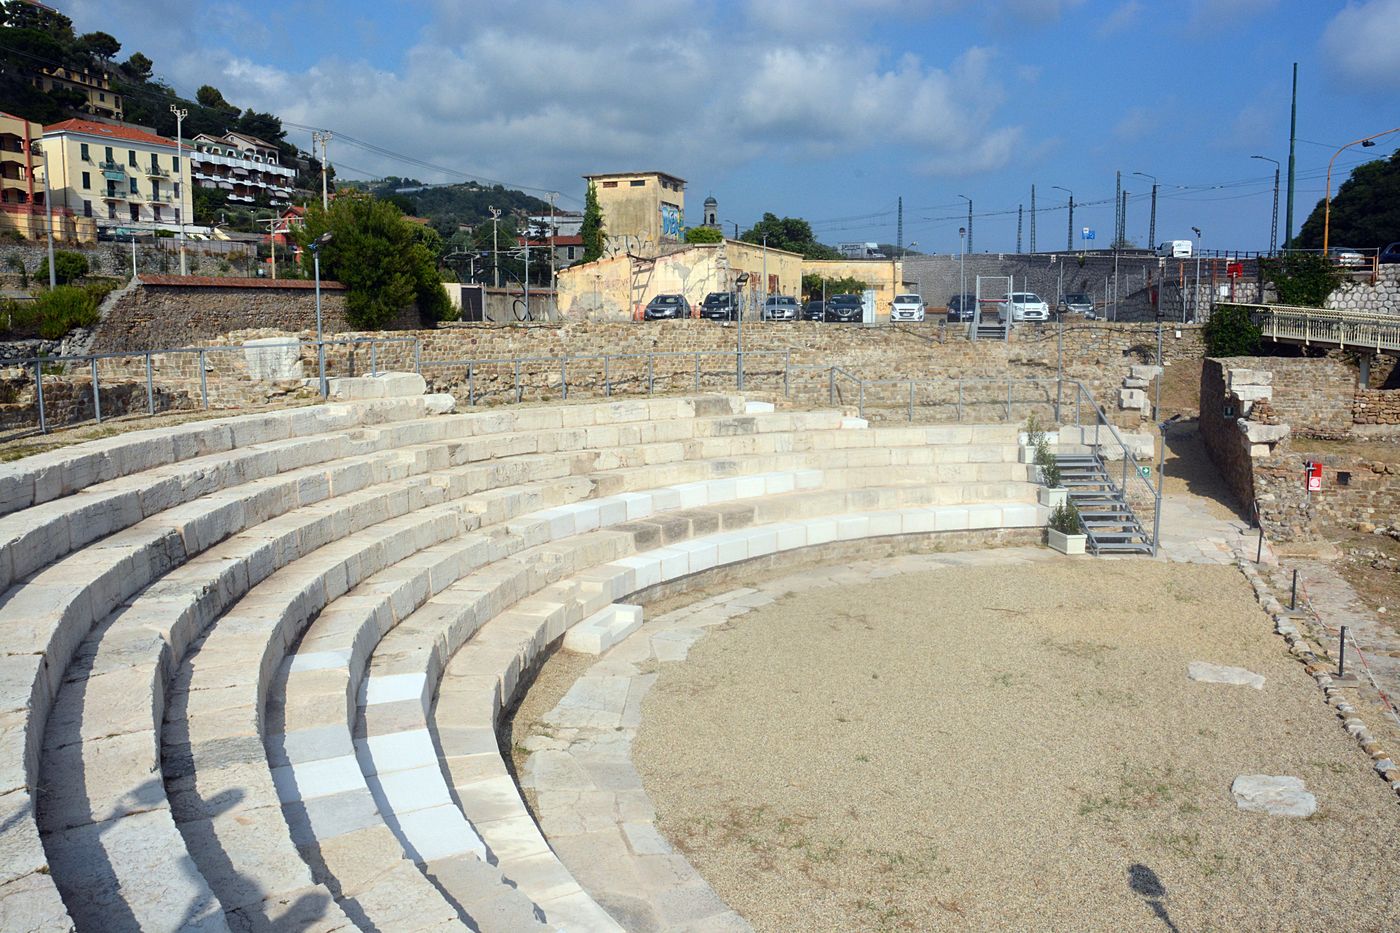 Teatro romano Ventimiglia inaugurazione apertura 7 agosto 2018_risultato